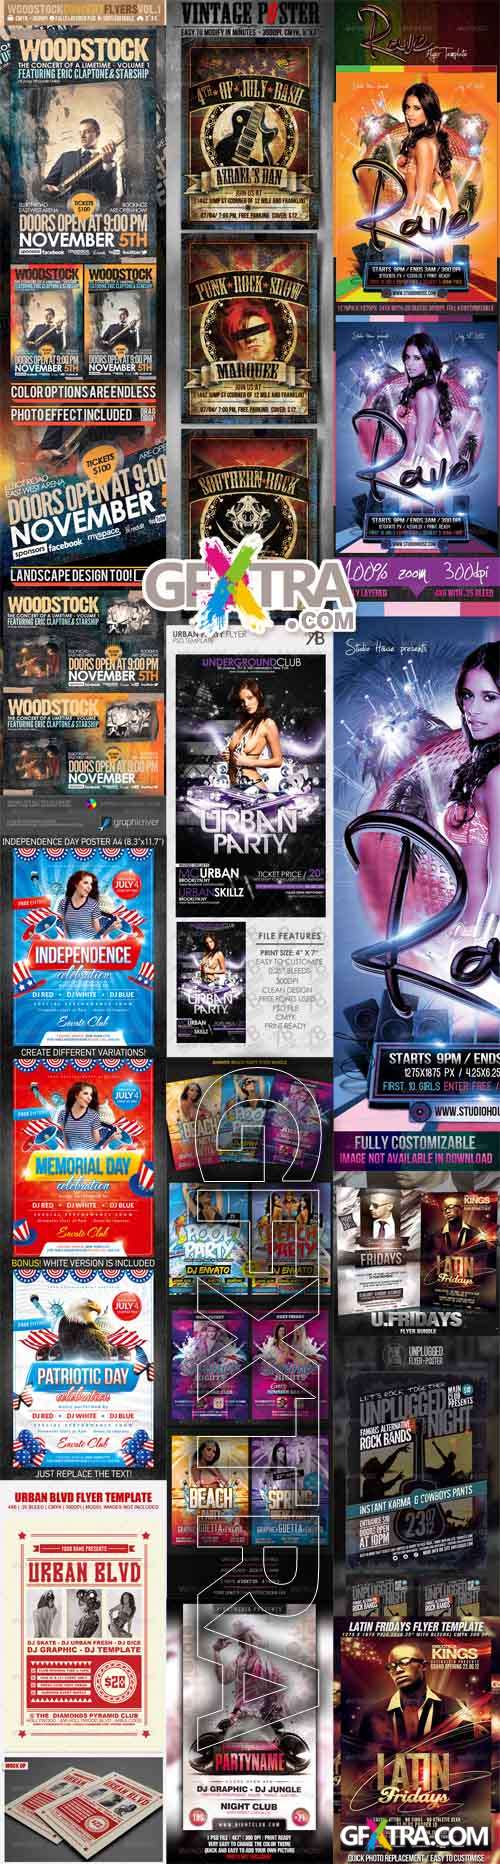 Flyers/Posters - Mix Bundle 2012 vol.2